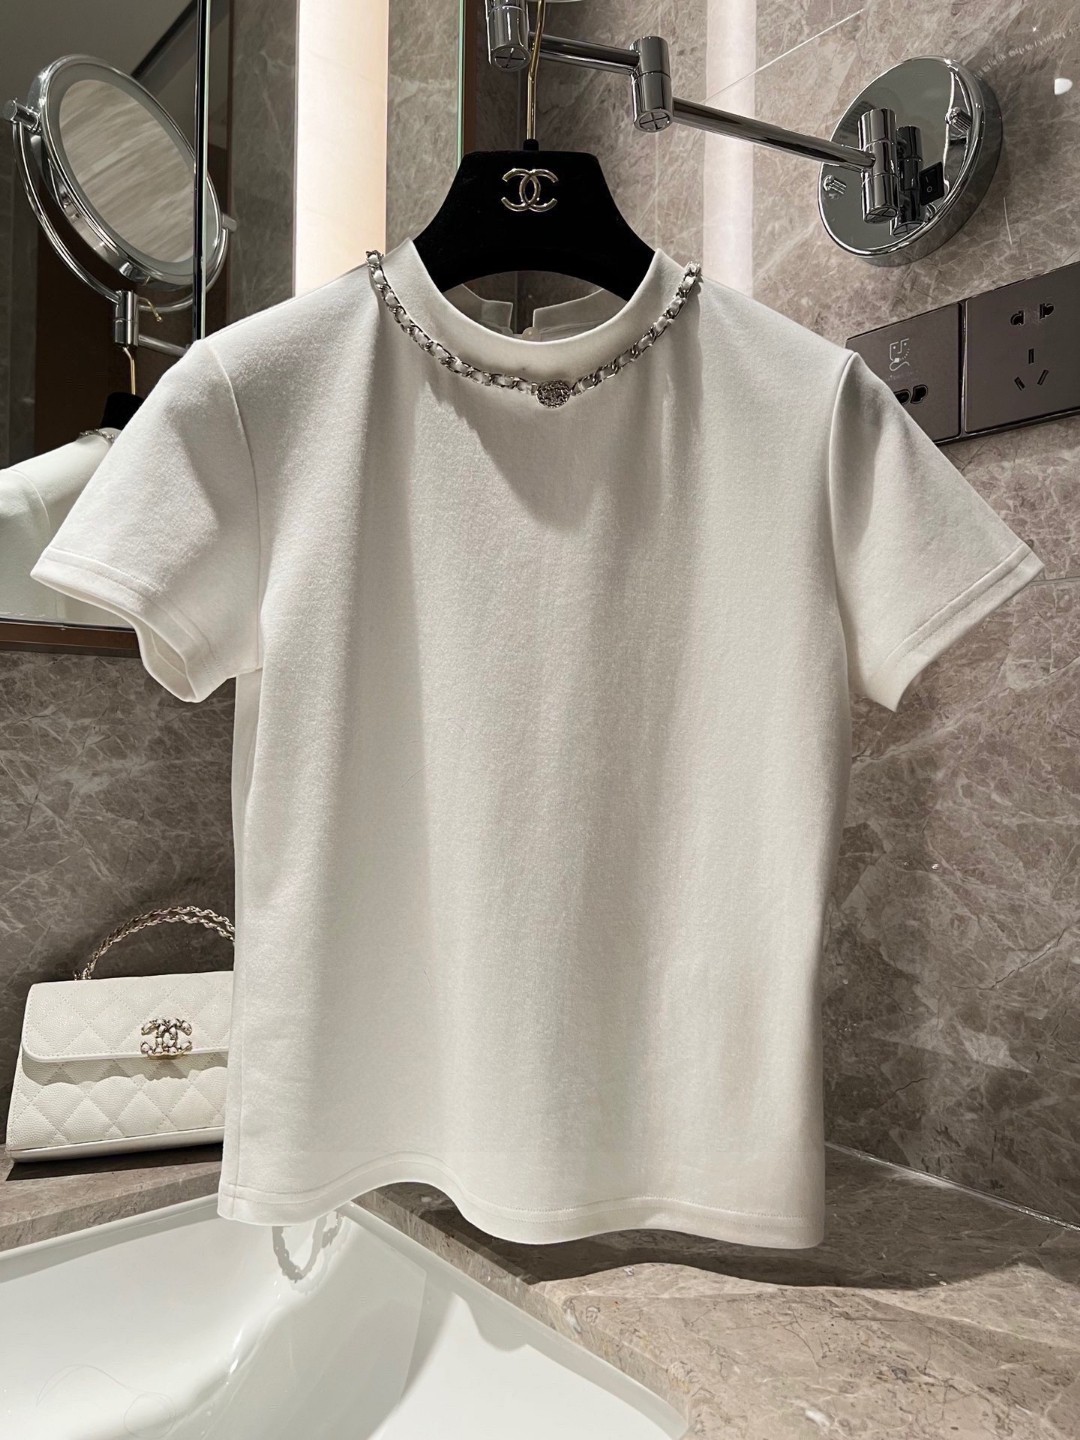 シャネル の t シャツ偽物 純綿 期間限定品 トップス 半袖 ネックレス飾り 品質保証 キラキラ 2色可選_2